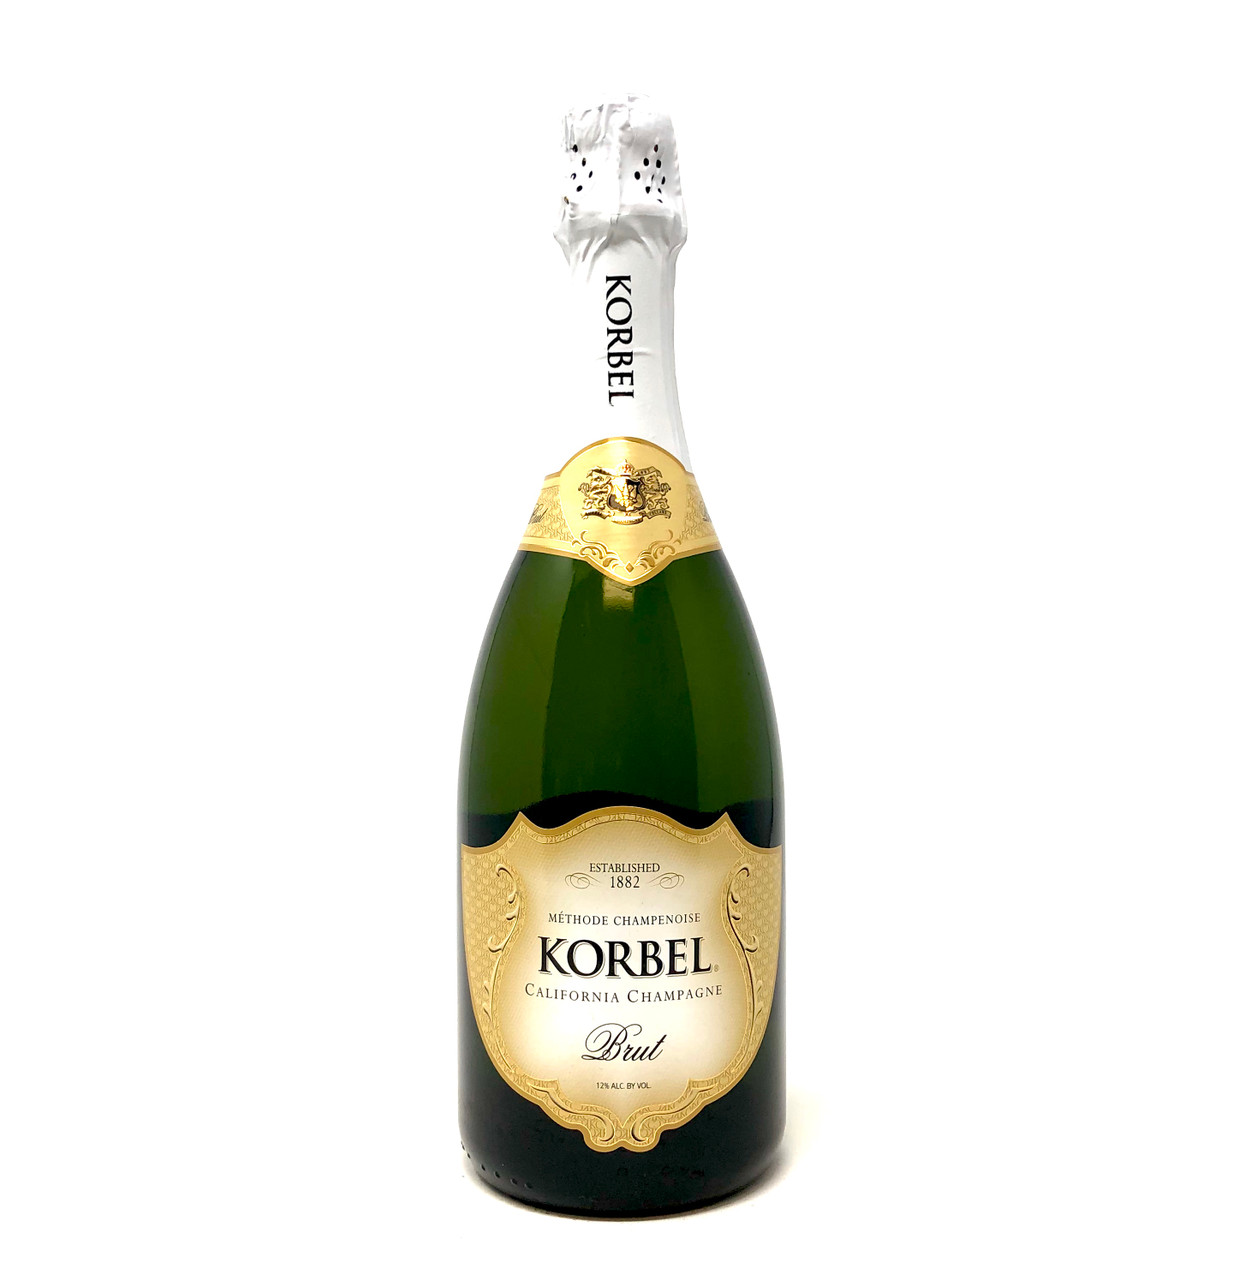 Korbel Brut Champagne - 750ml Bottle